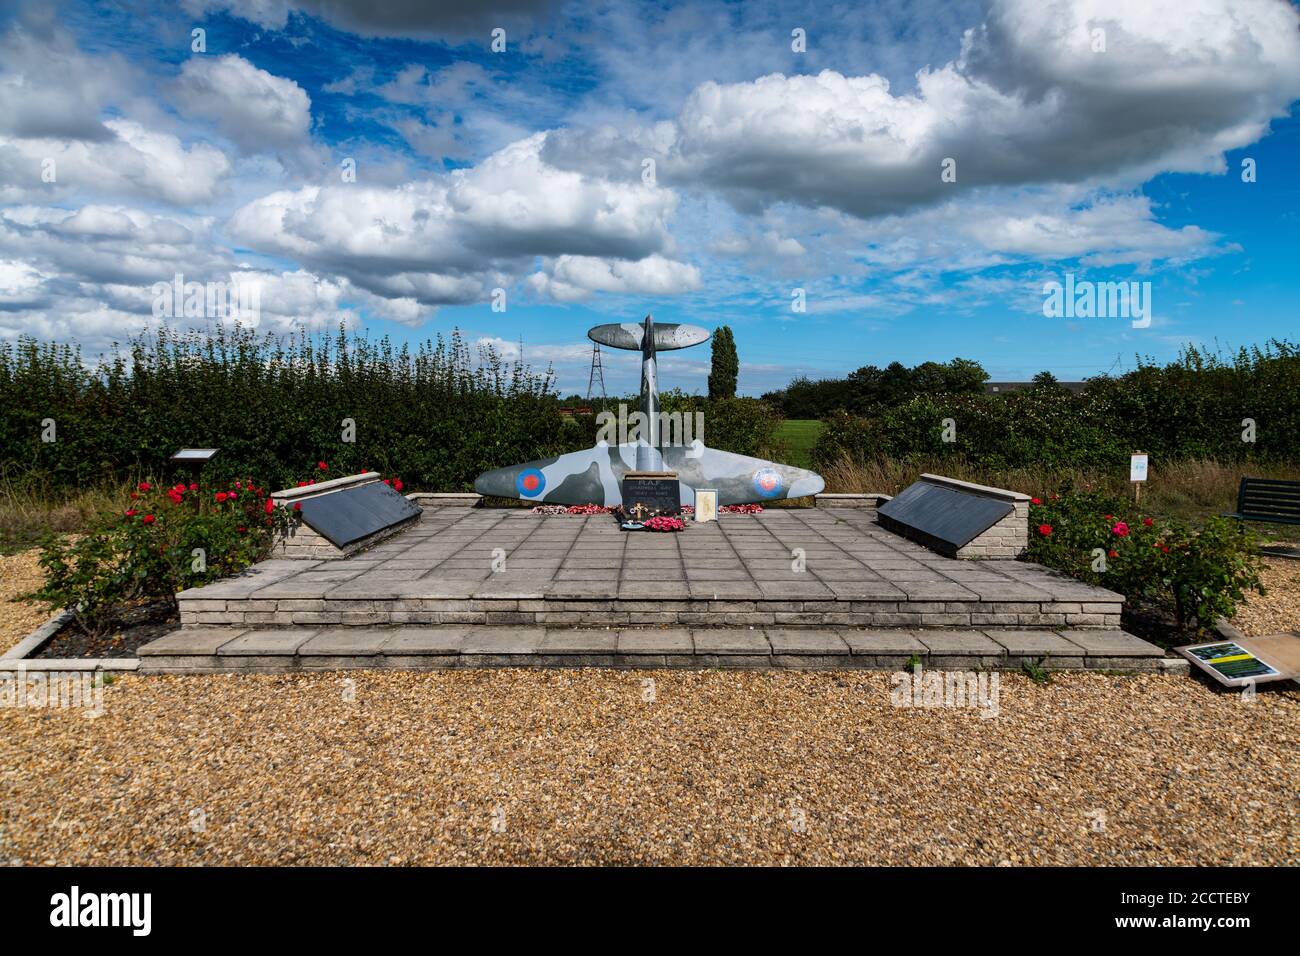 Mémorial de la Seconde Guerre mondiale de la baie de Bradwell de RAF capturant les noms des aviateurs de la RAF, de l'ARC et de la RNZAF, ainsi qu'un seul aviateur belge libre perdu pendant la guerre. Banque D'Images